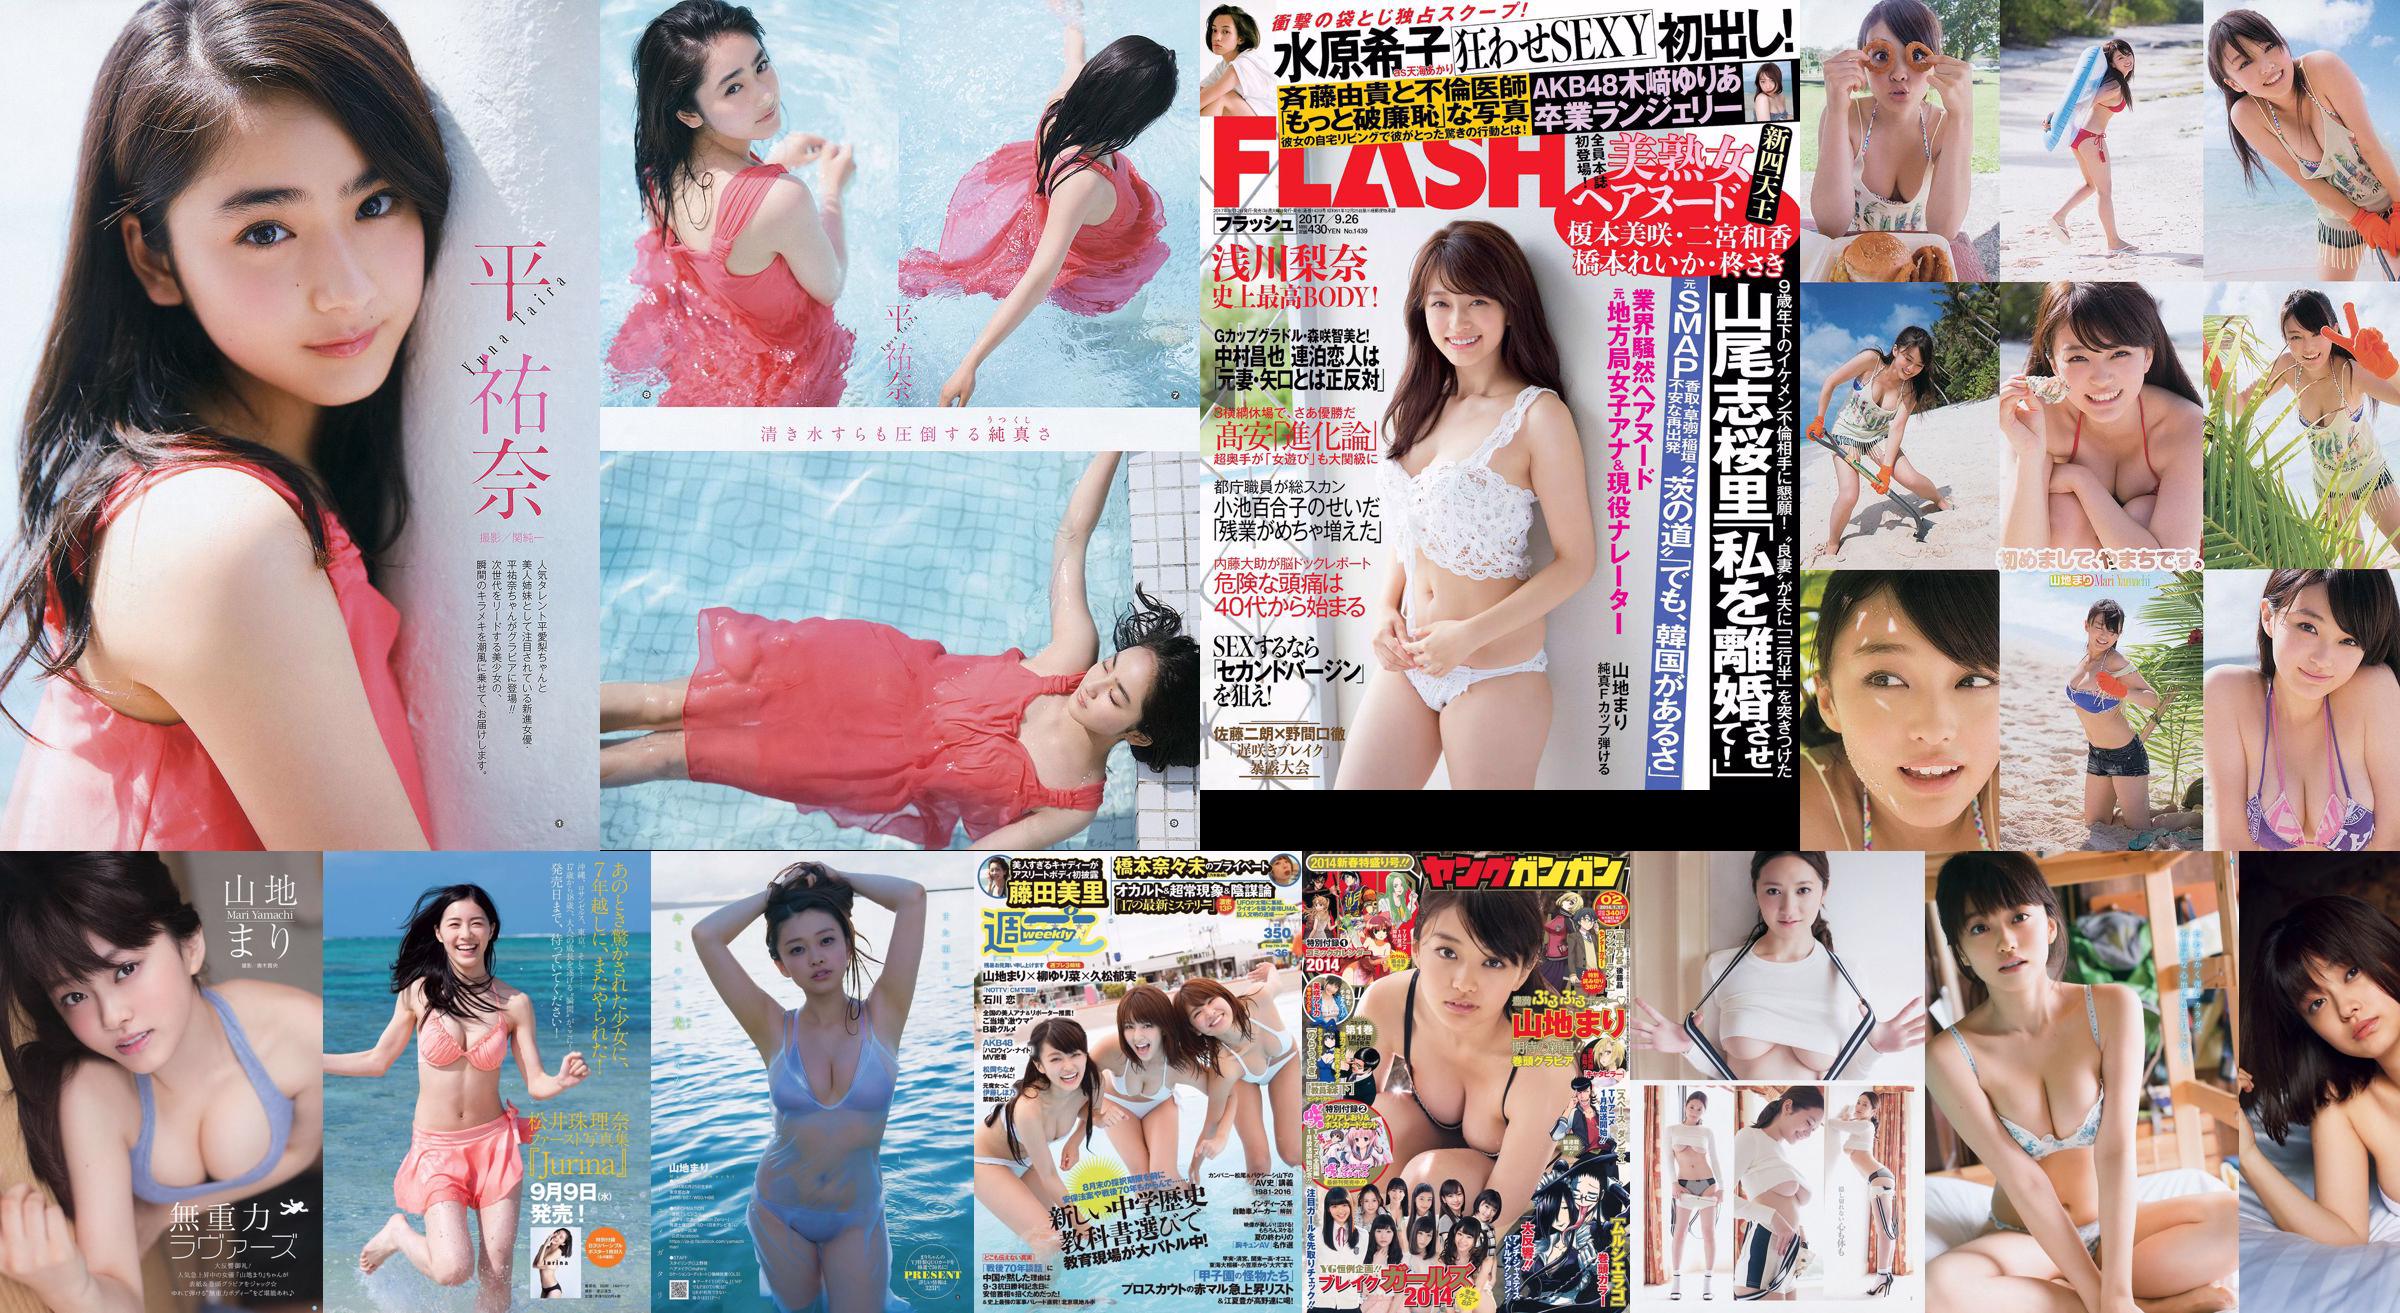 Yamachi Yuri Kodama Haruka Sugimoto Yumi Noodle Girl Nao Oo Aoyama Kana Fujita Yoshikawa Ichikawa [Weekly Playboy] 2015 No.10 Photo Magazine No.4bbfb0 Page 1